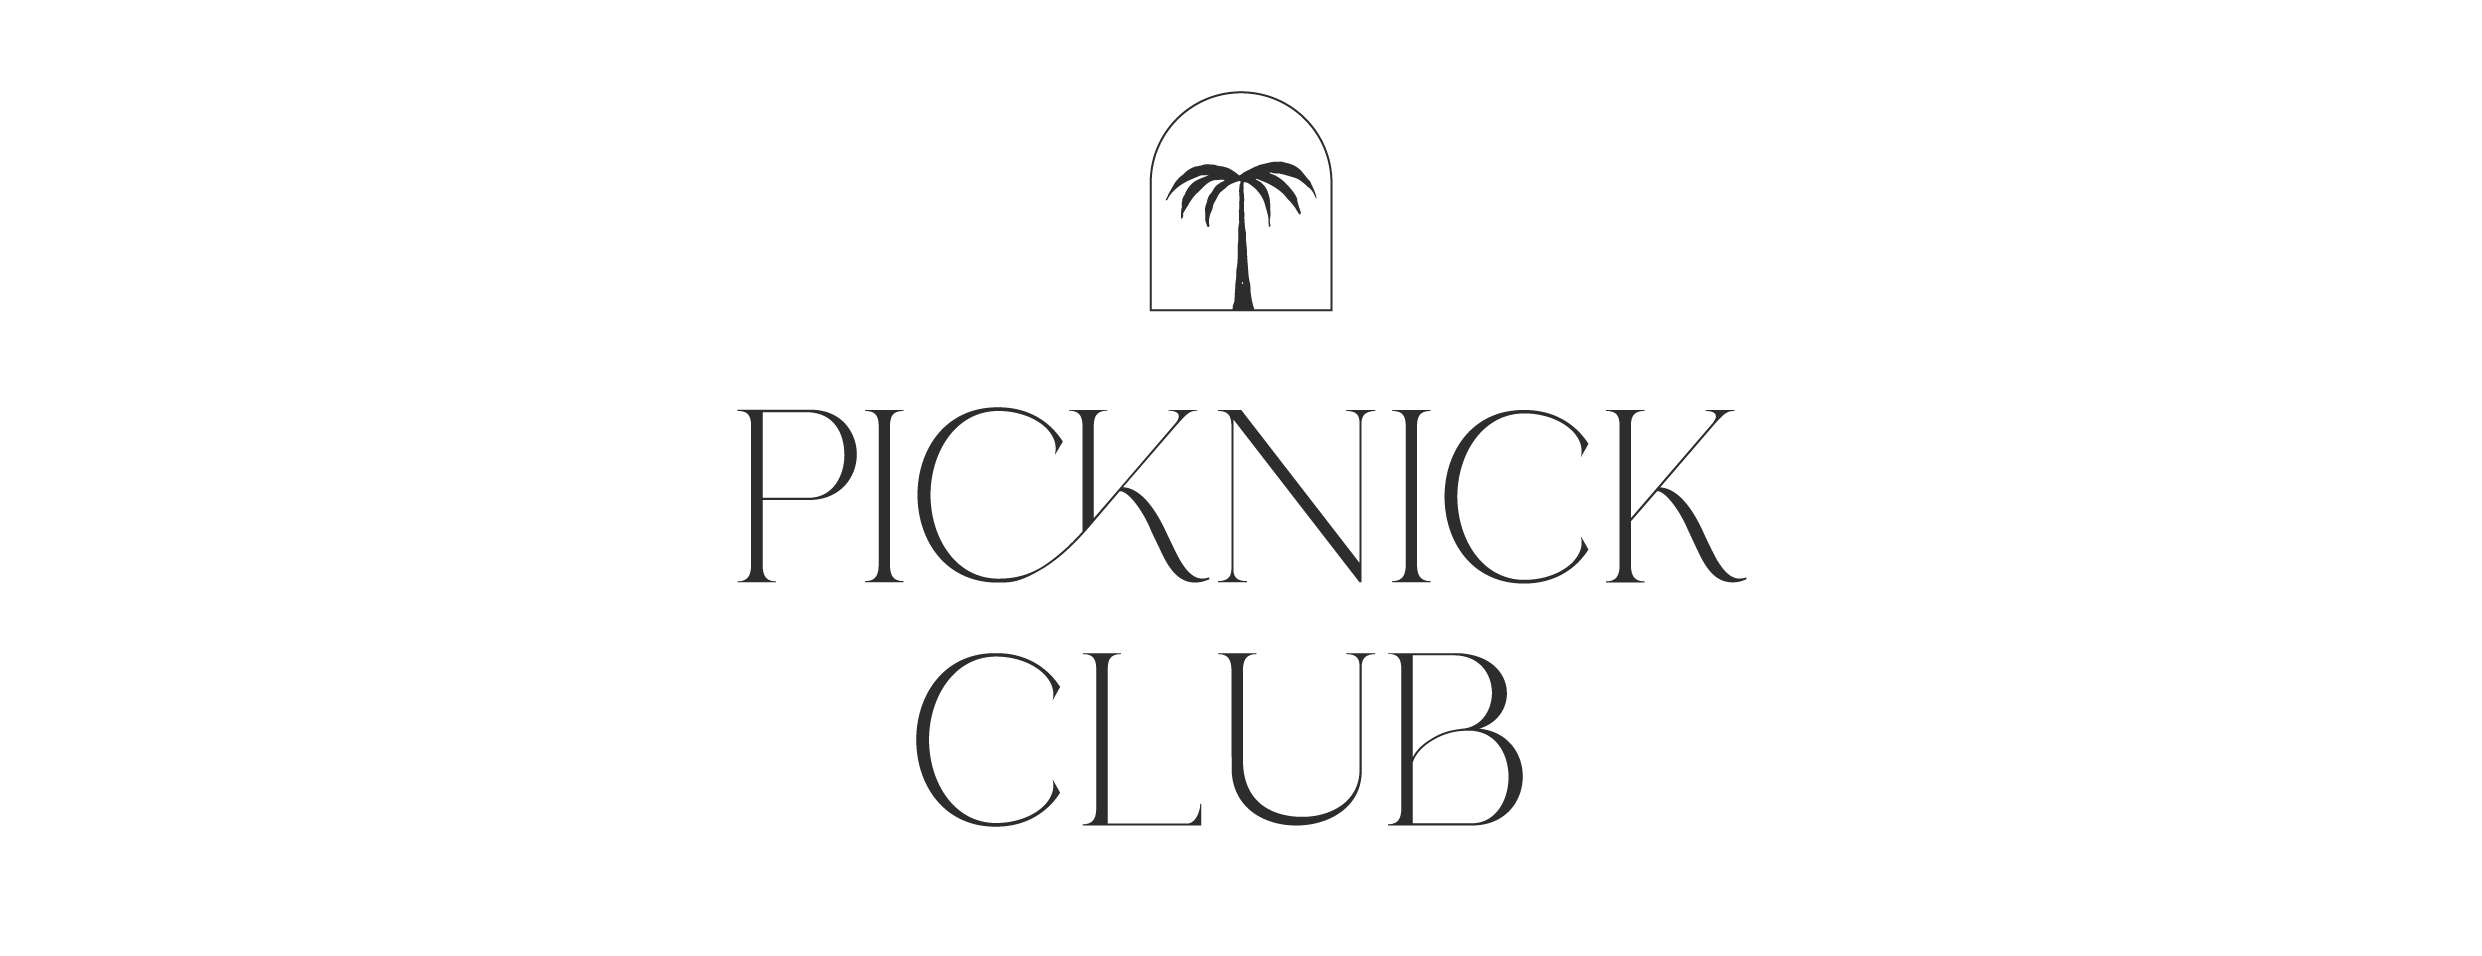 Picknick club store, events en daylight studio logo